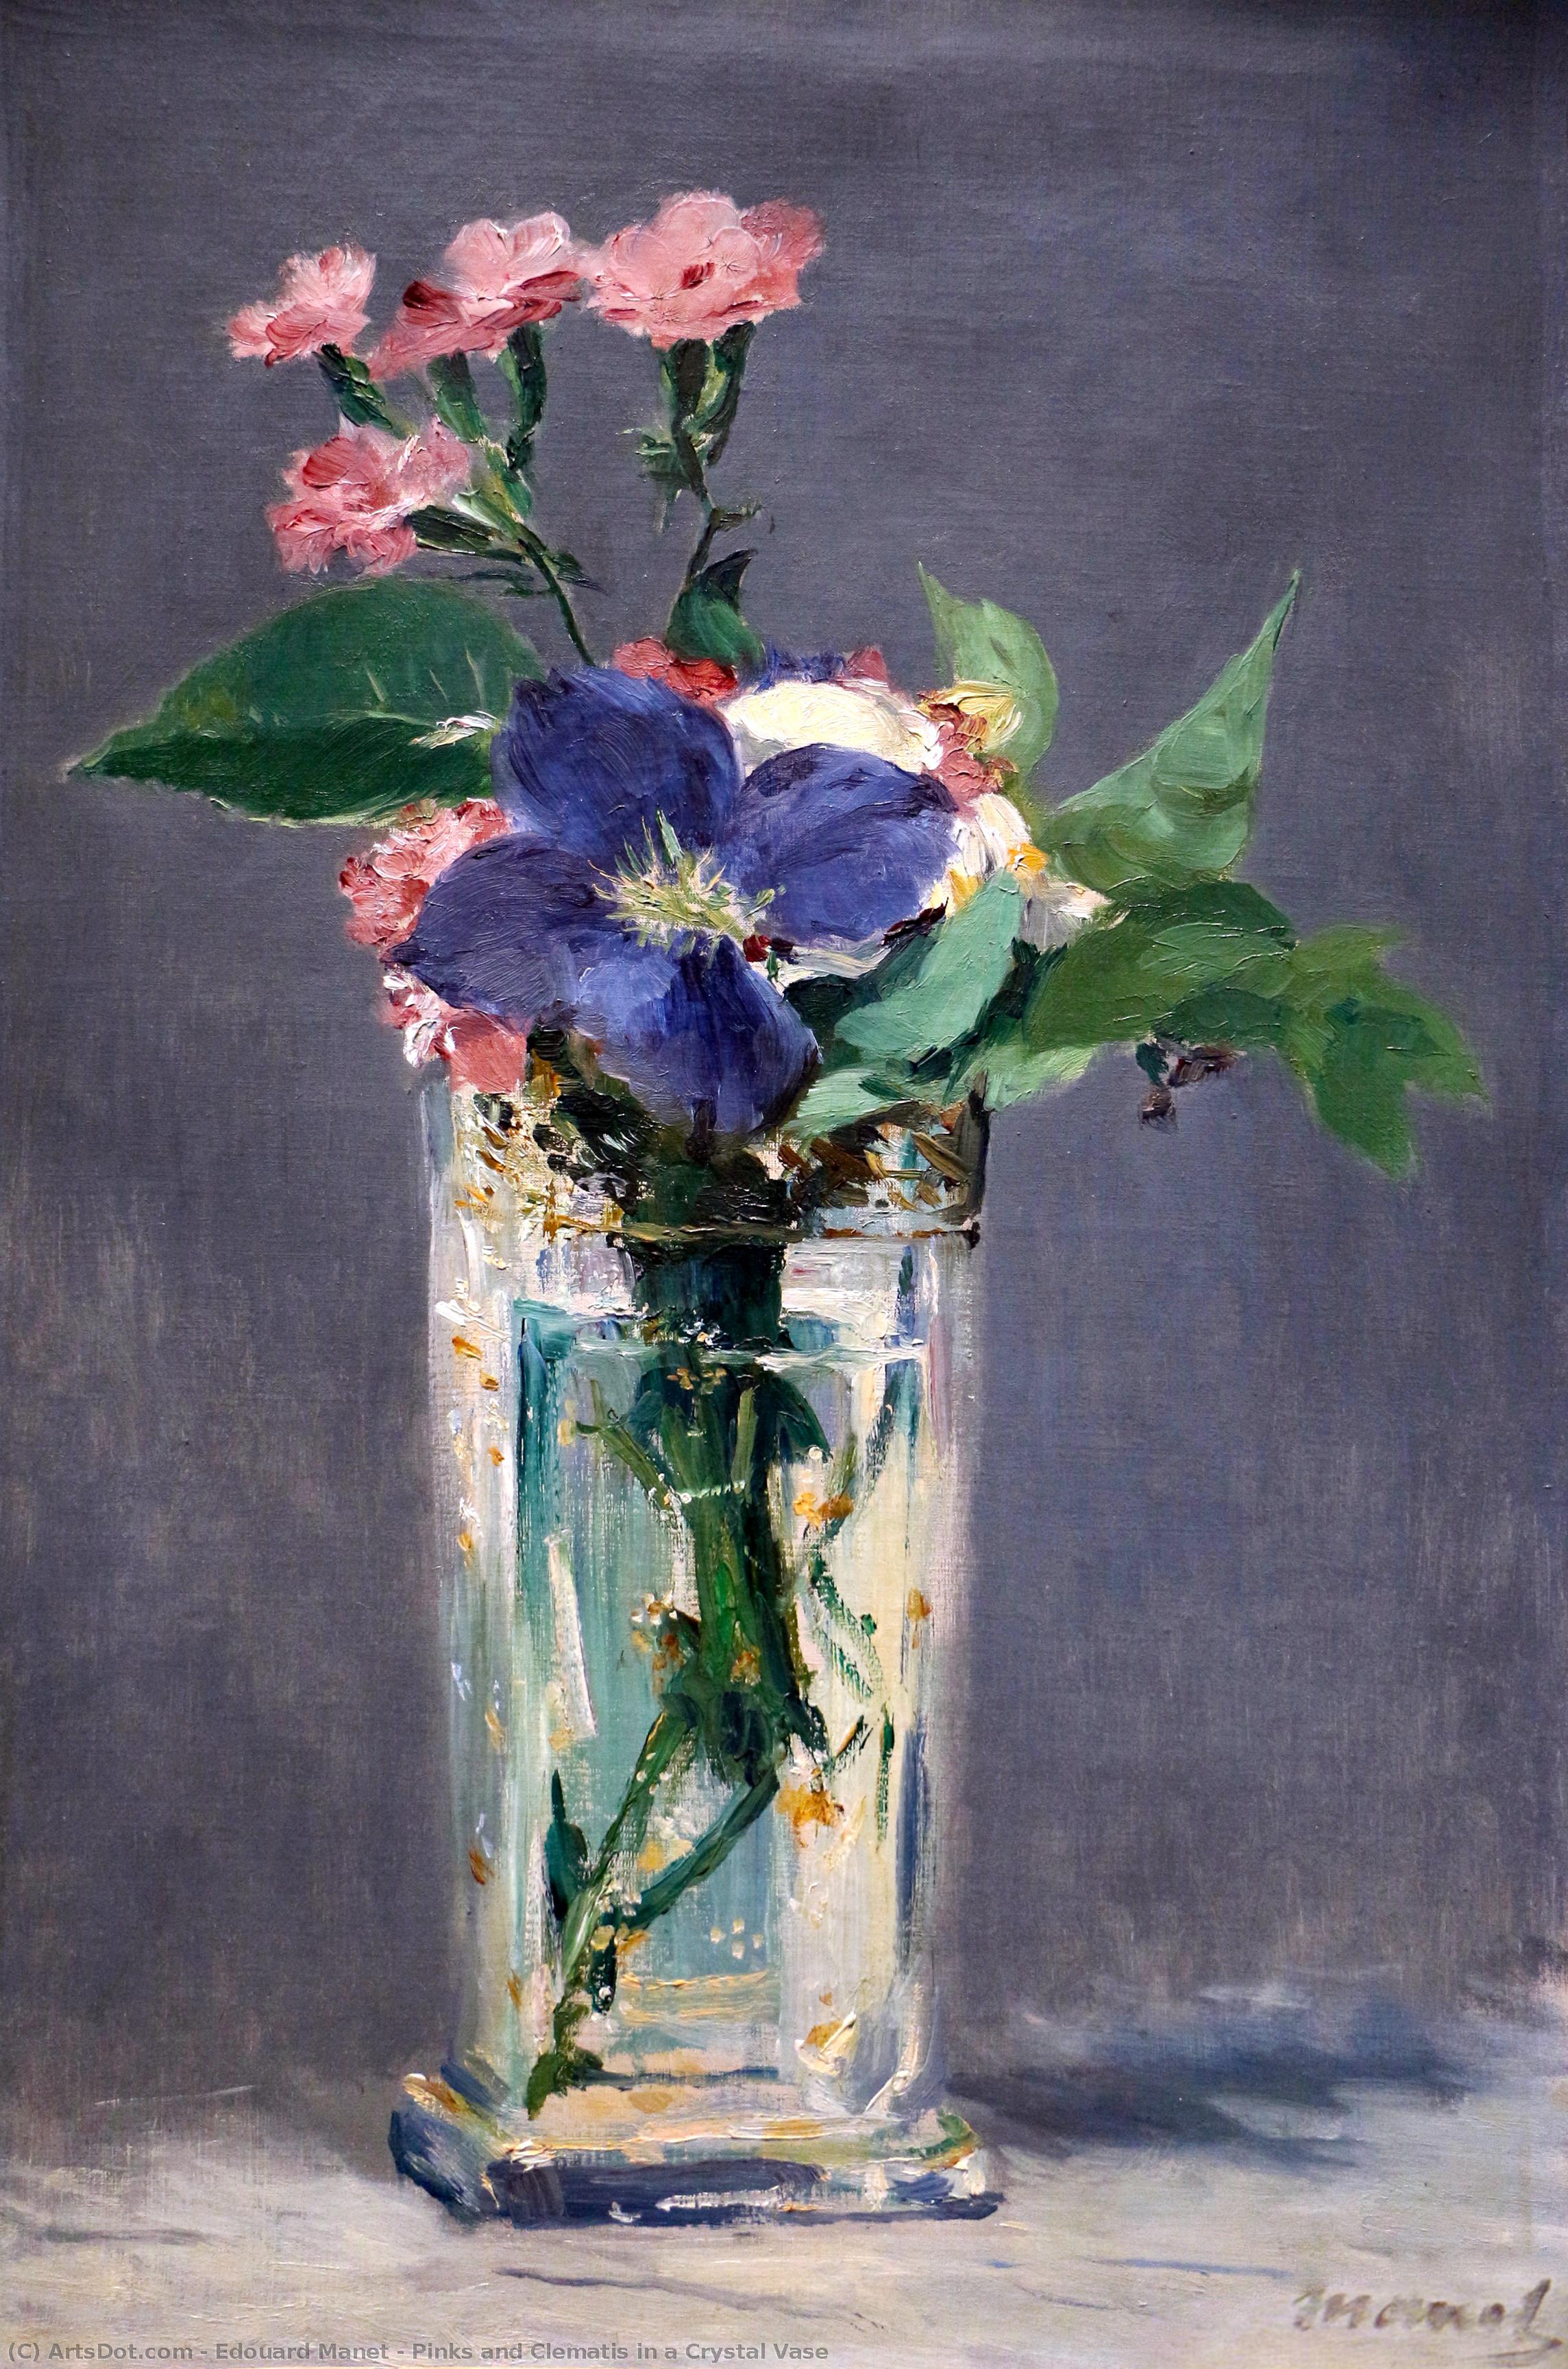 WikiOO.org - Enciklopedija likovnih umjetnosti - Slikarstvo, umjetnička djela Edouard Manet - Pinks and Clematis in a Crystal Vase